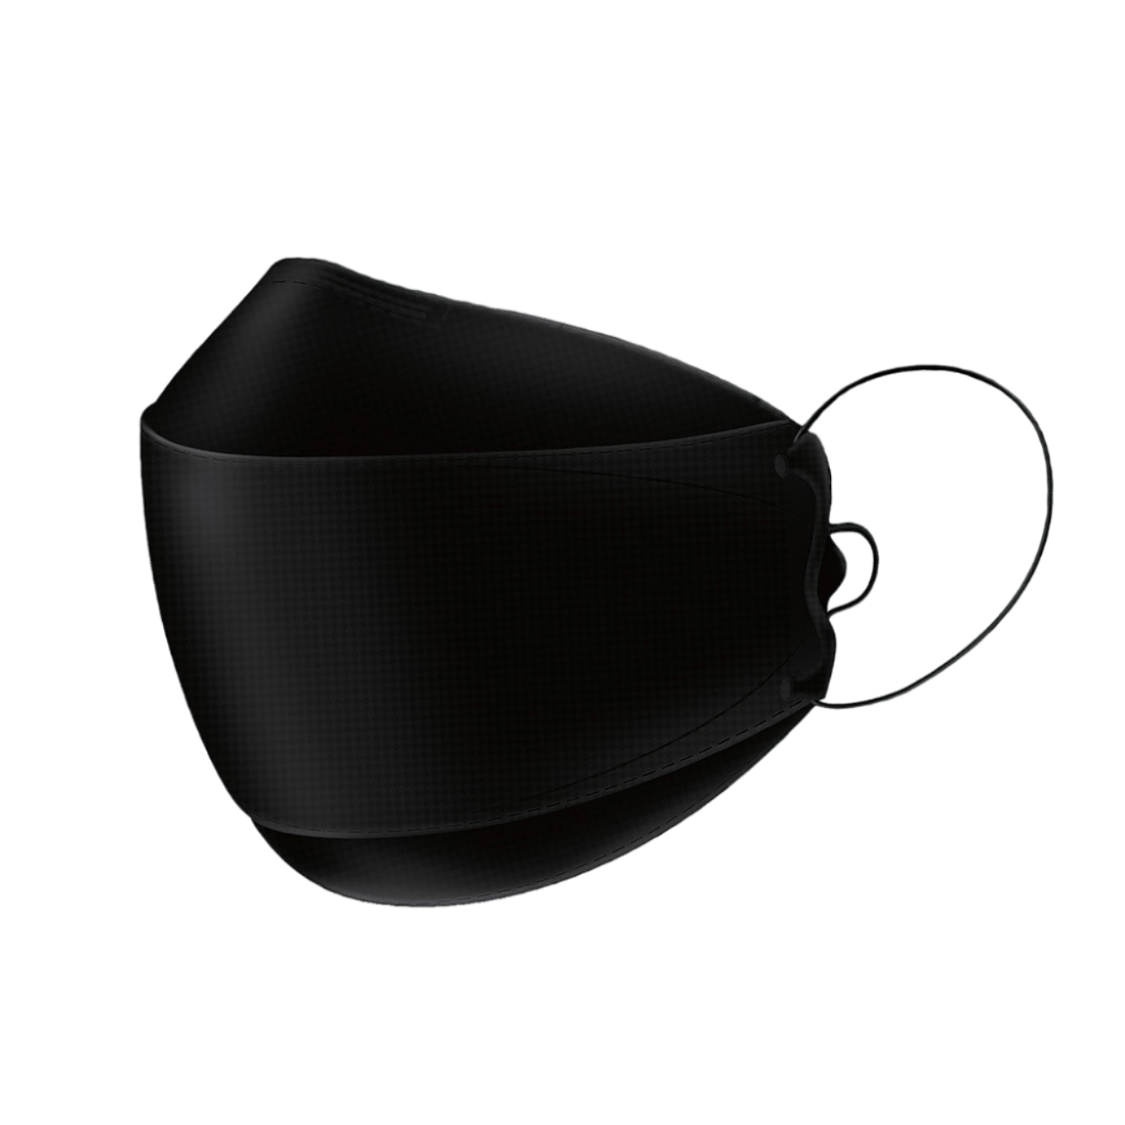 Black Onique 3D Boat Shape Adjustable Ear-Loop KF94 Mask Left 3Q View Mask Only